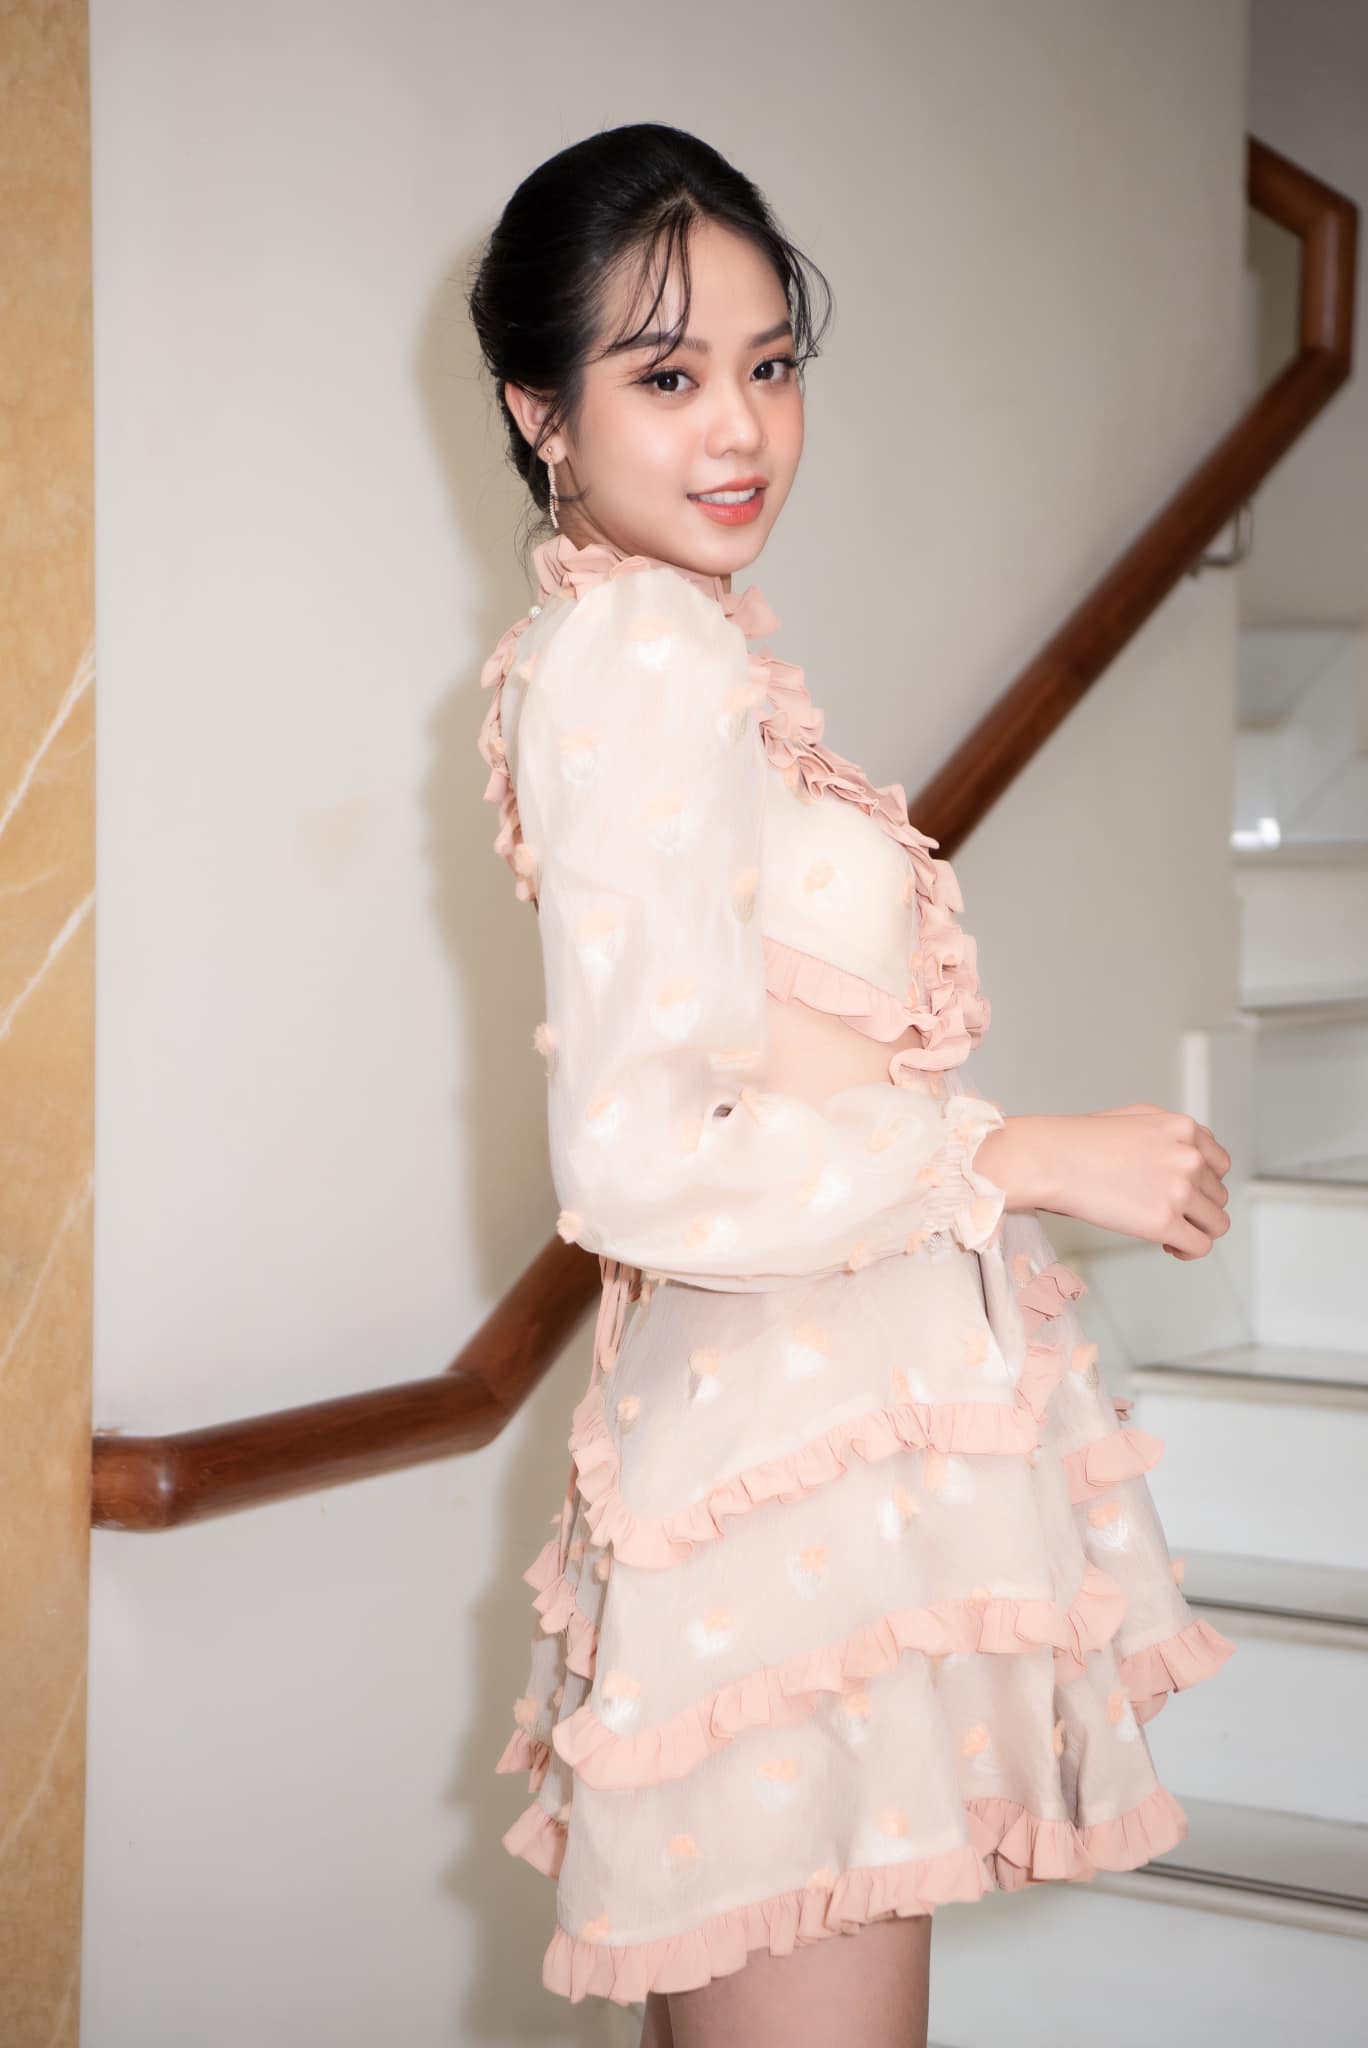 Top 3 Hoa hậu Việt Nam 2022 nói về những tranh cãi nhan sắc, Hoa hậu Thanh Thủy lên tiếng về tin đồn tình cảm - ảnh 4